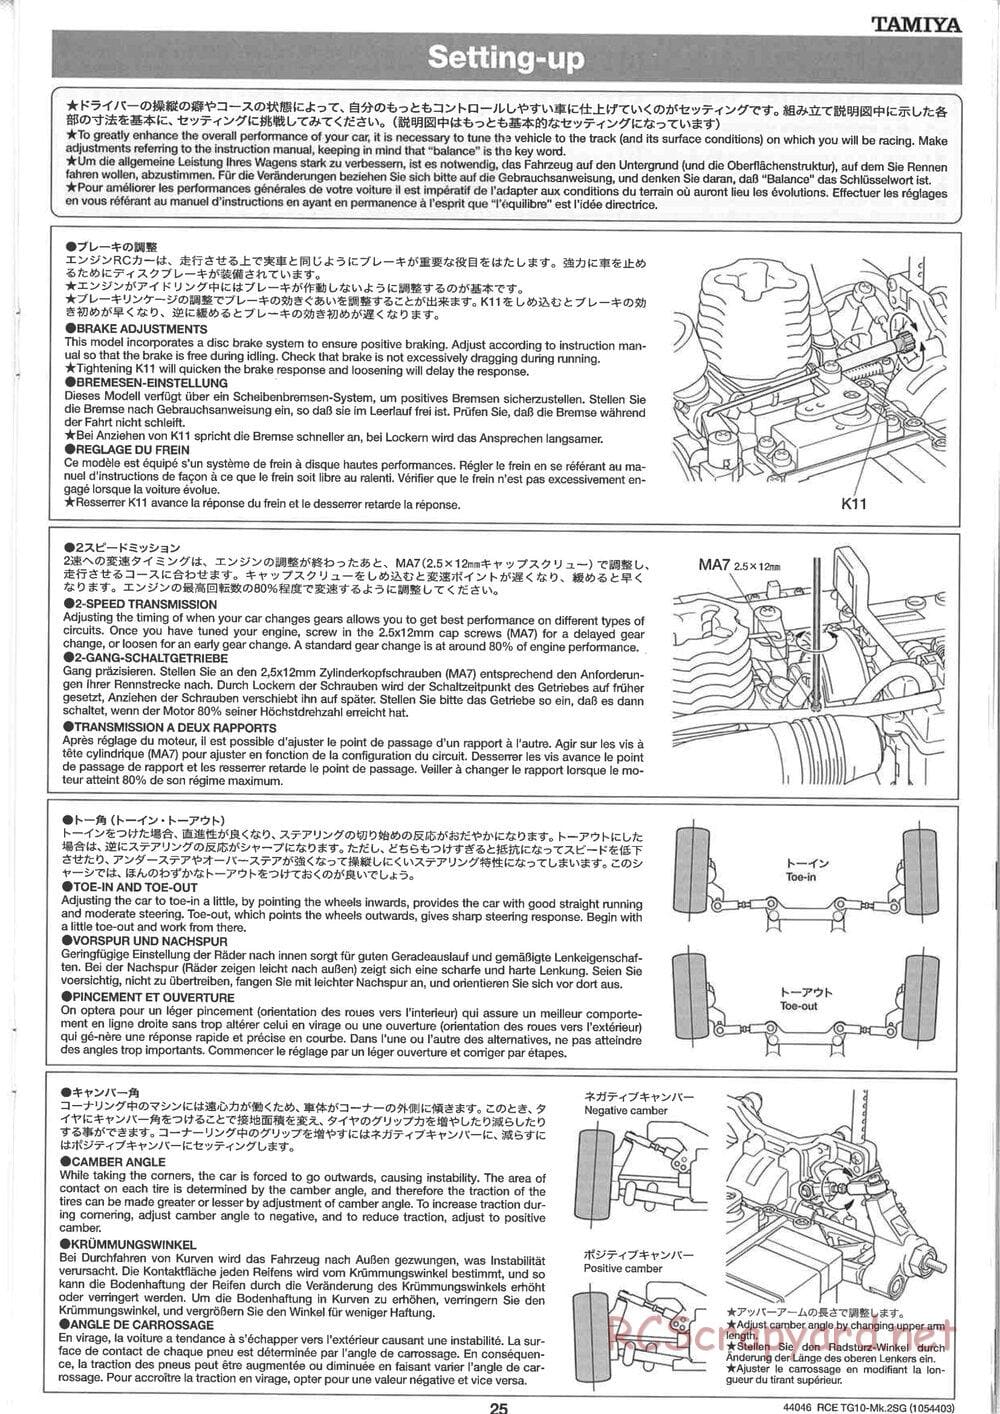 Tamiya - TG10 Mk.2SG Chassis - Manual - Page 25